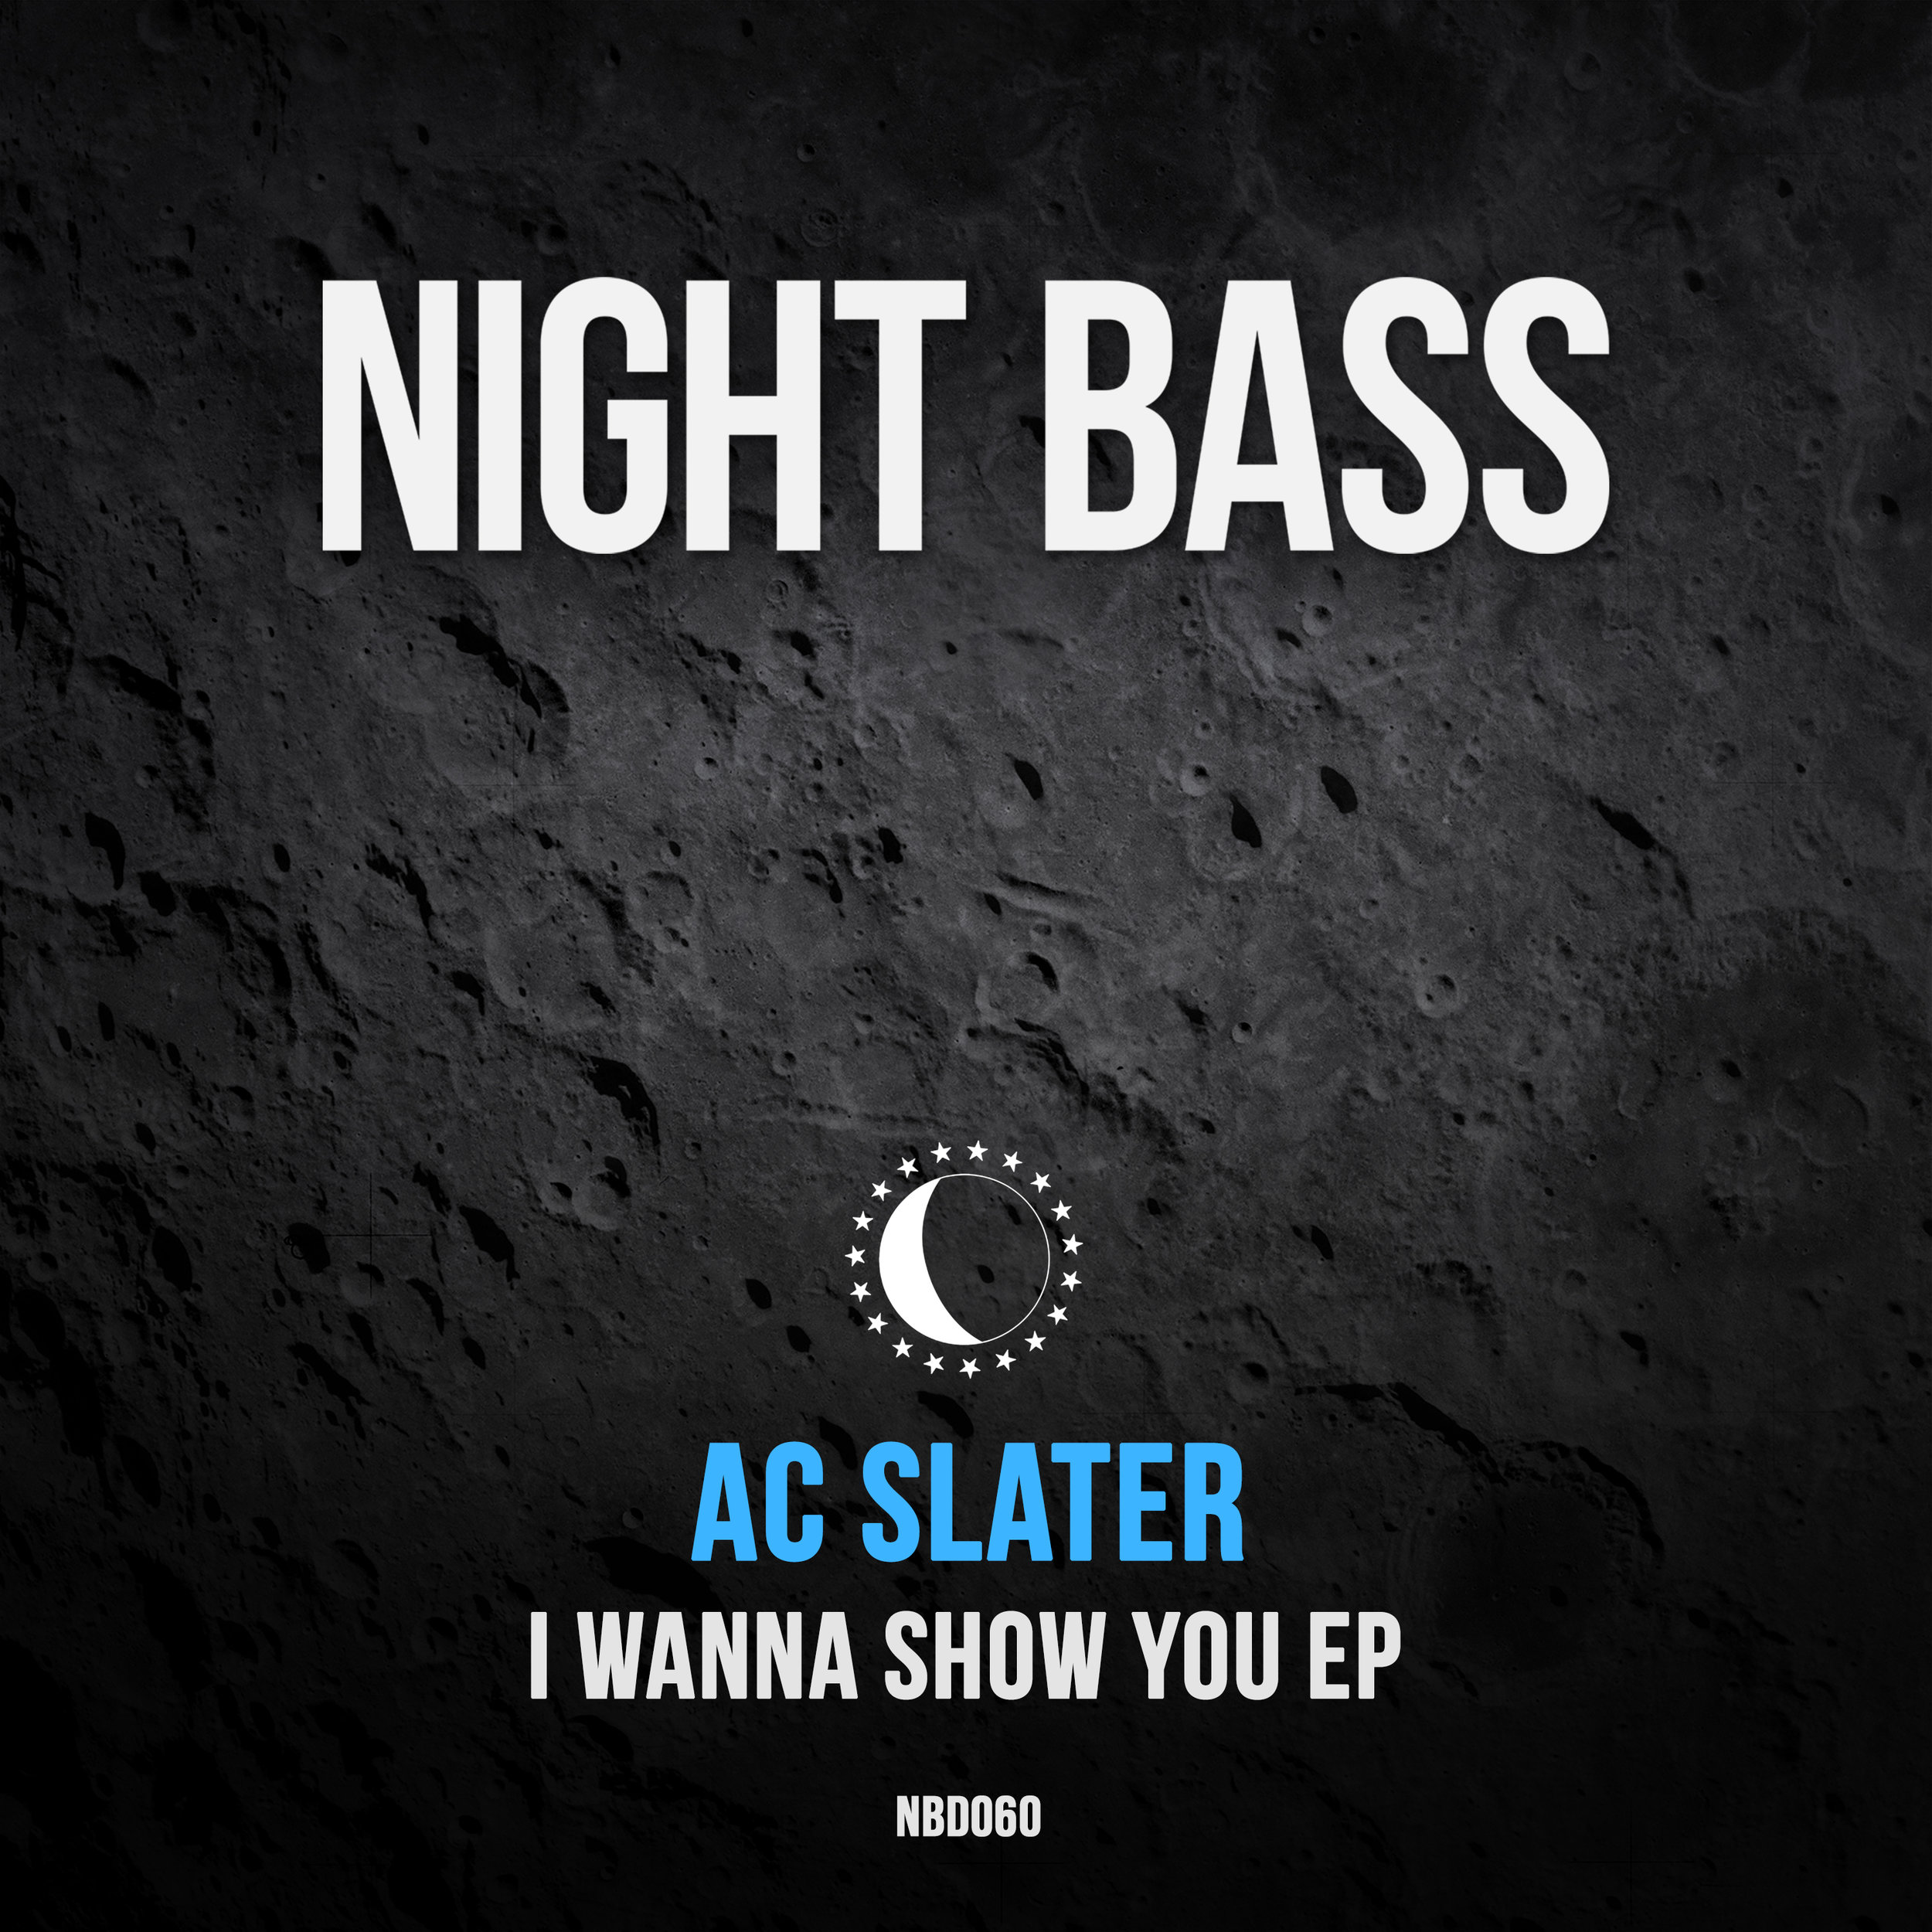 NBD060 - AC Slater - I Wanna Show You EP.jpg